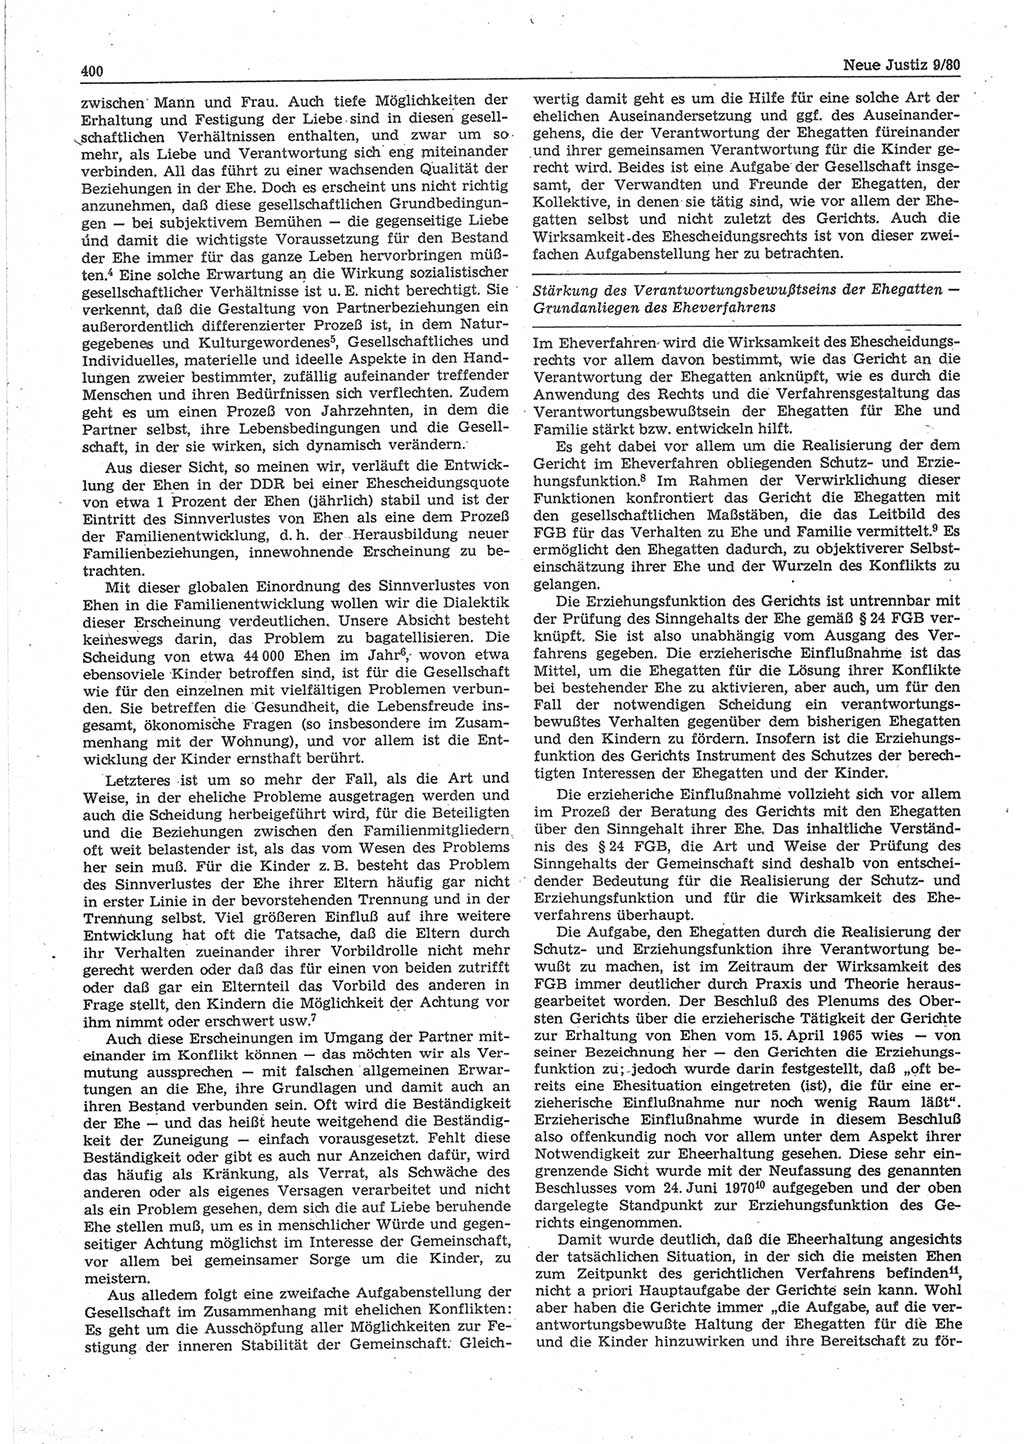 Neue Justiz (NJ), Zeitschrift für sozialistisches Recht und Gesetzlichkeit [Deutsche Demokratische Republik (DDR)], 34. Jahrgang 1980, Seite 400 (NJ DDR 1980, S. 400)